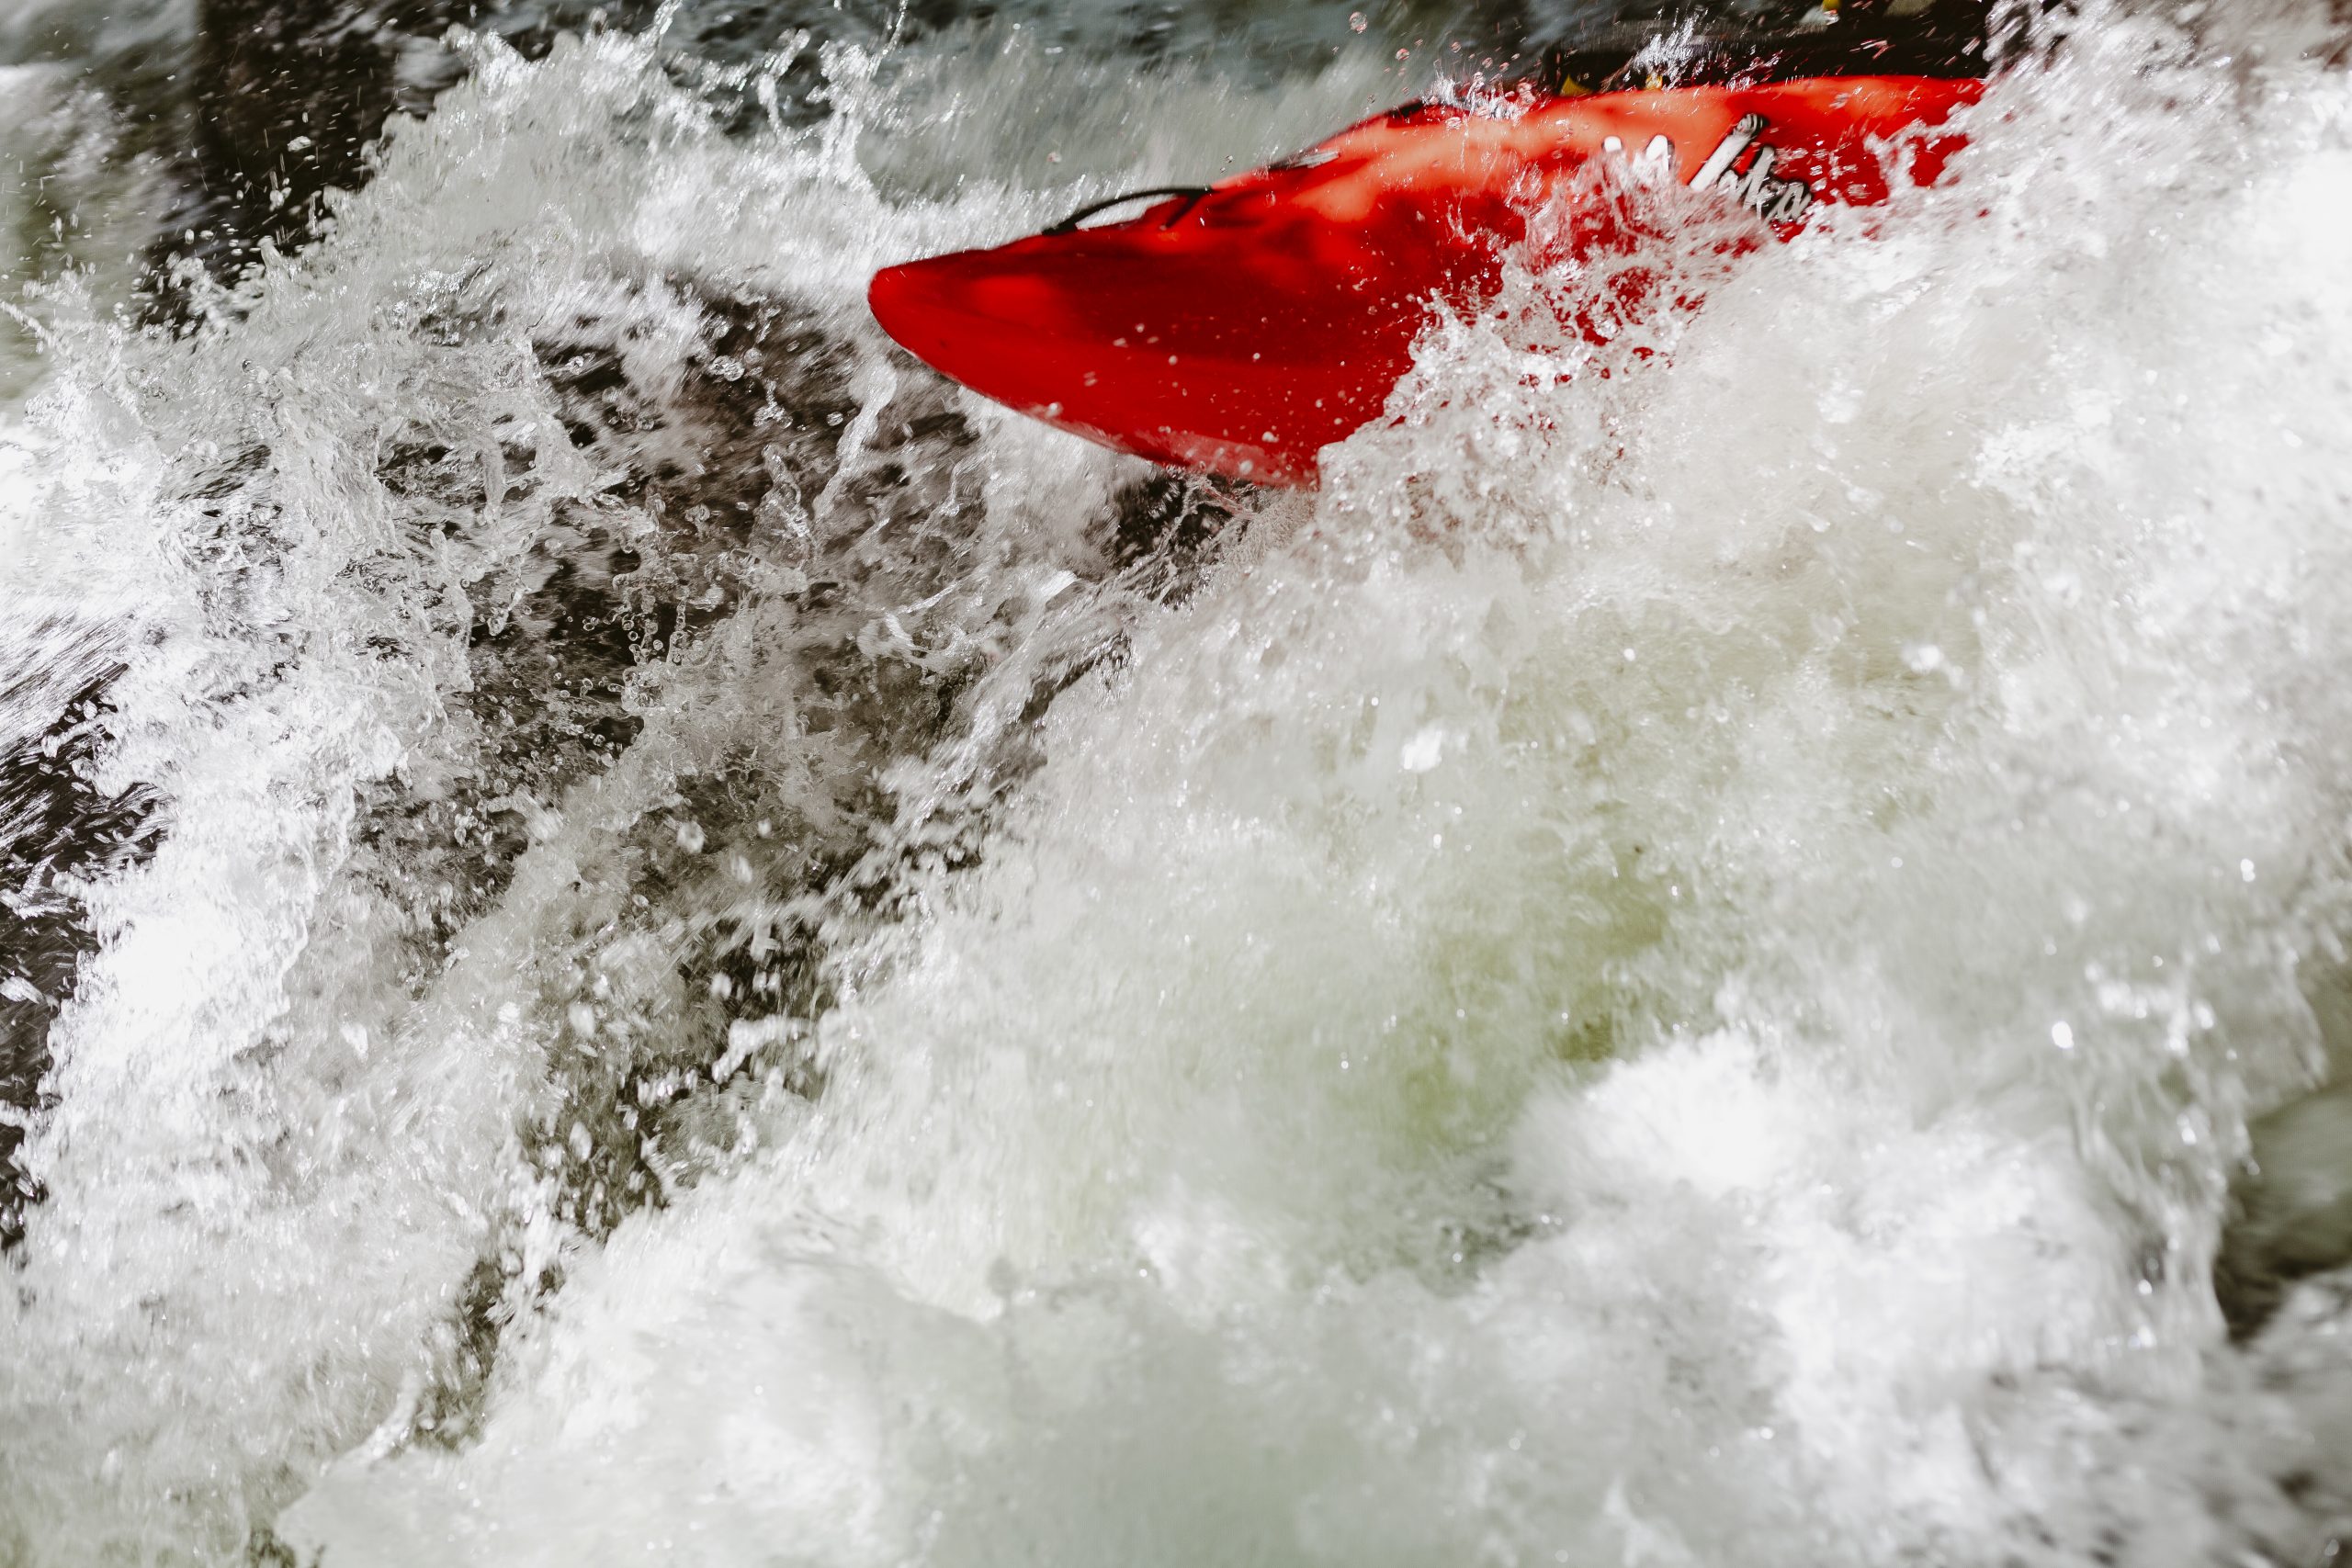 Las Fuentes (Vº). Río Piqueras. Descenso en piragua. XX competición de Kayak extremo. 24 de julio de 2022.
© Juan San Sebastián. Todos los derechos reservados.